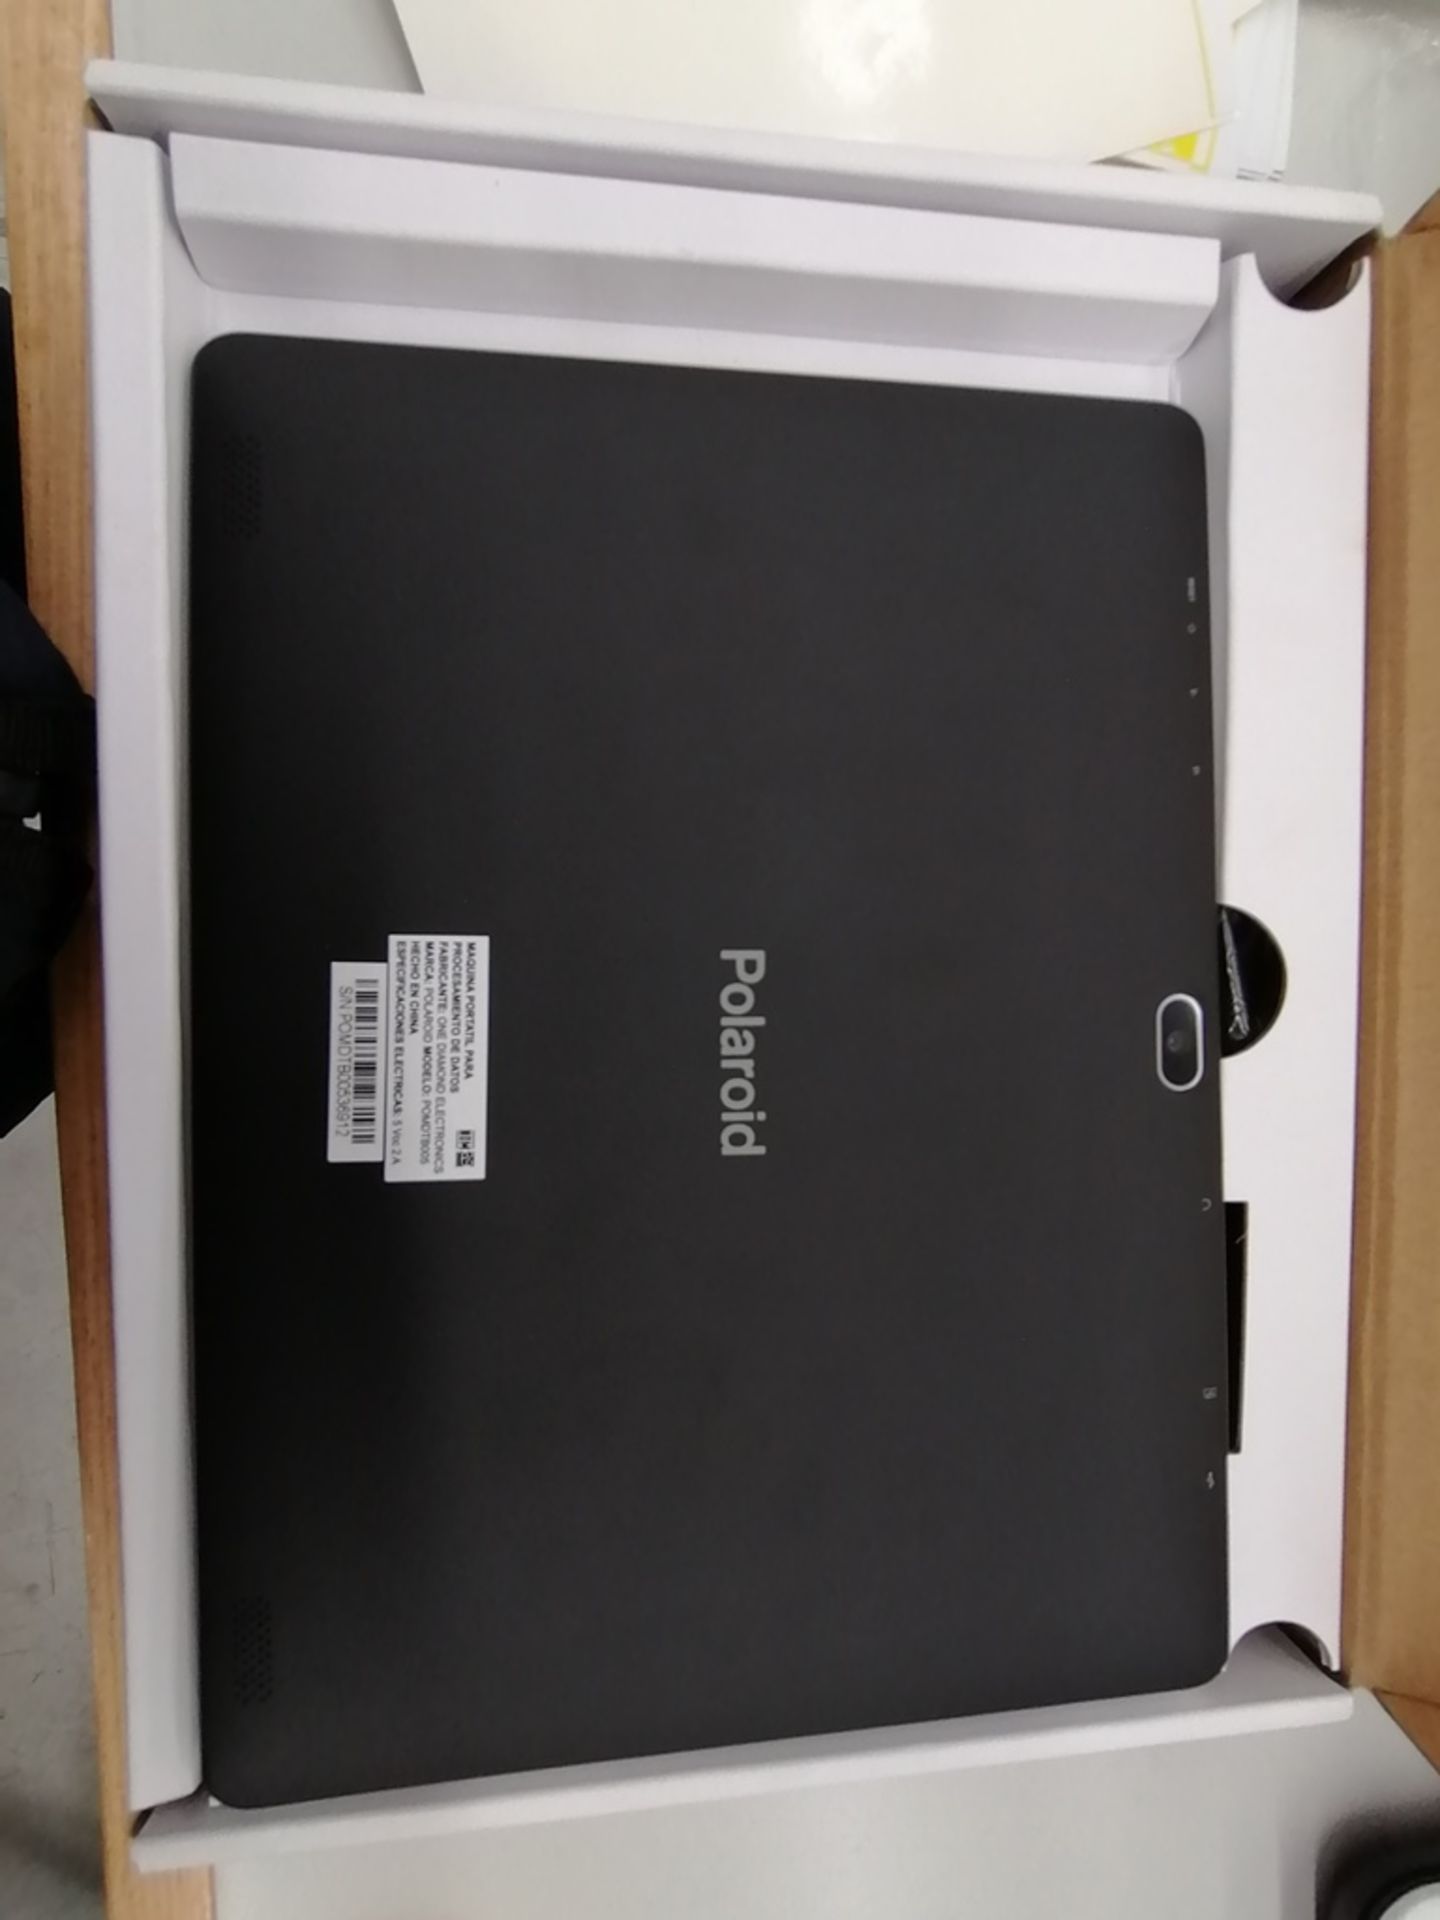 1 Lote de Mini-Lap + Tablet incluye: 1 Tablet Polaroid, Modelo POMDTB005, Serie 00536912, 2GB RAM + - Image 4 of 13